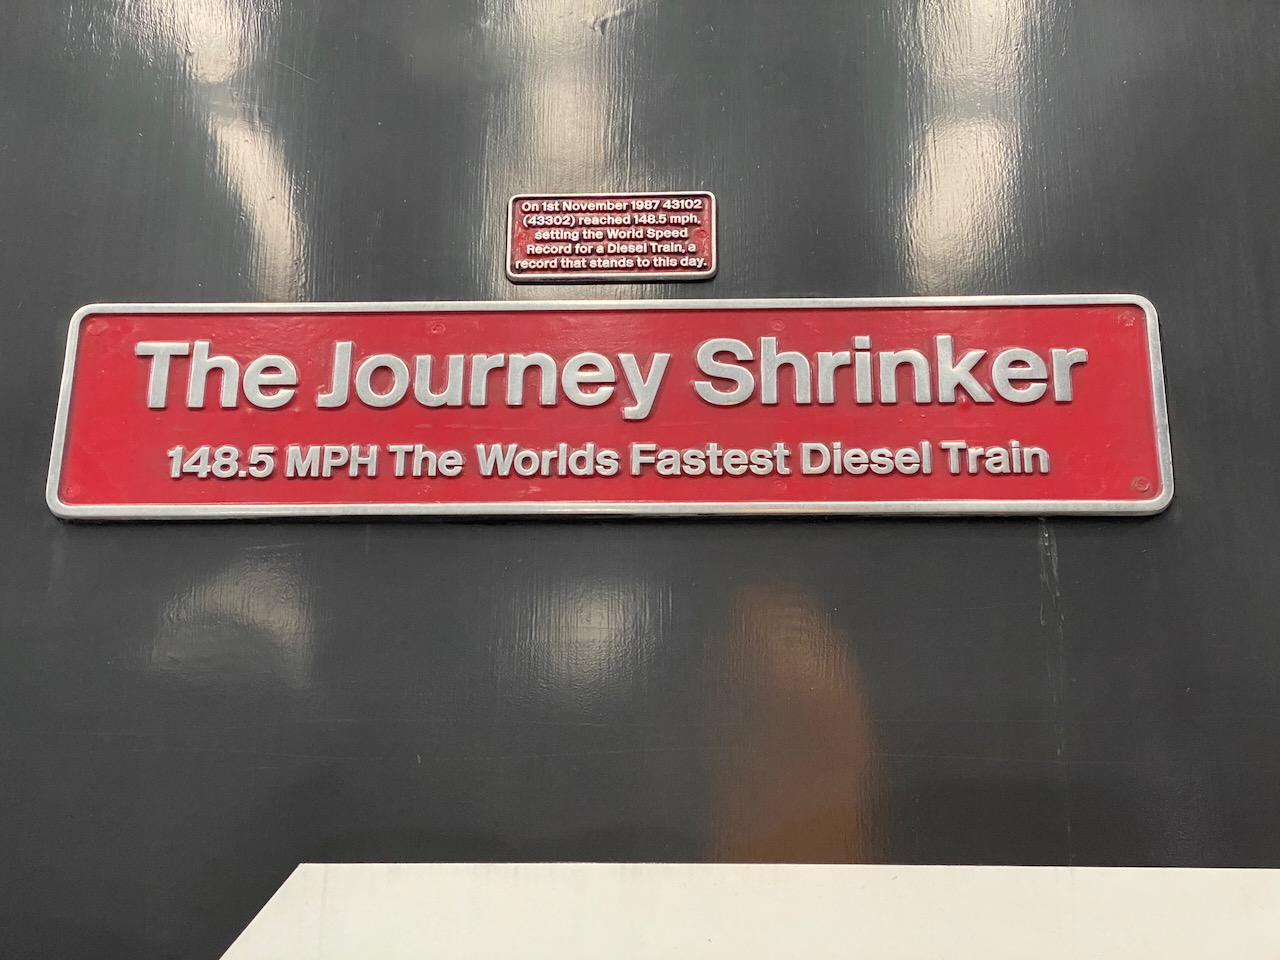 Fastest Diesel Train in the world